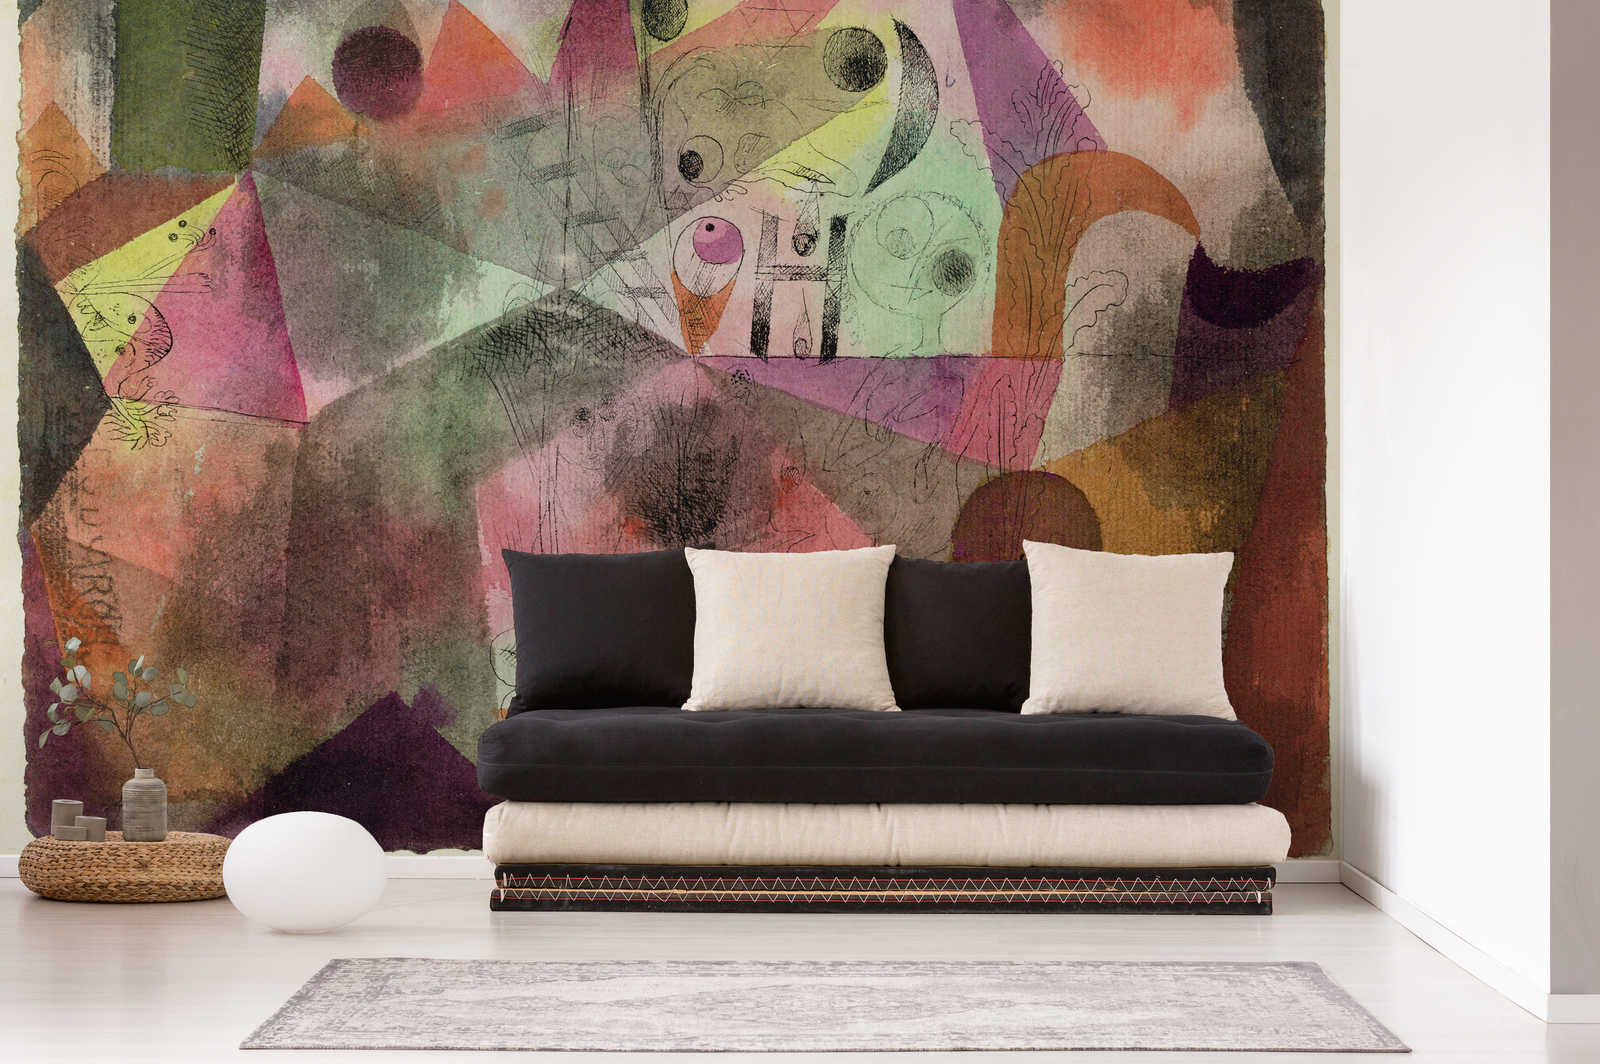             Mural "Con la H" de Paul Klee
        